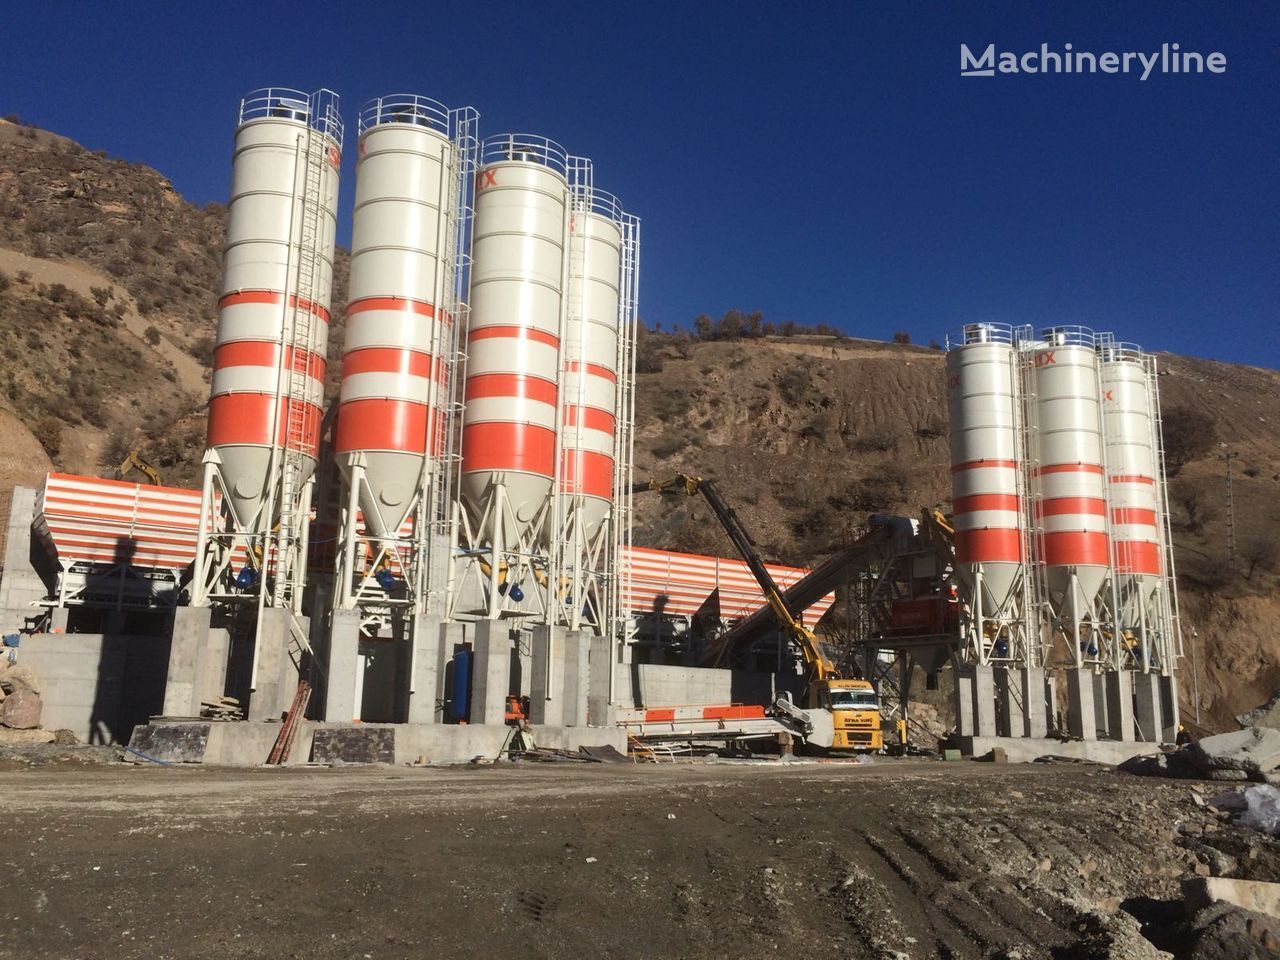 new Semix Silos de ciment cement silo